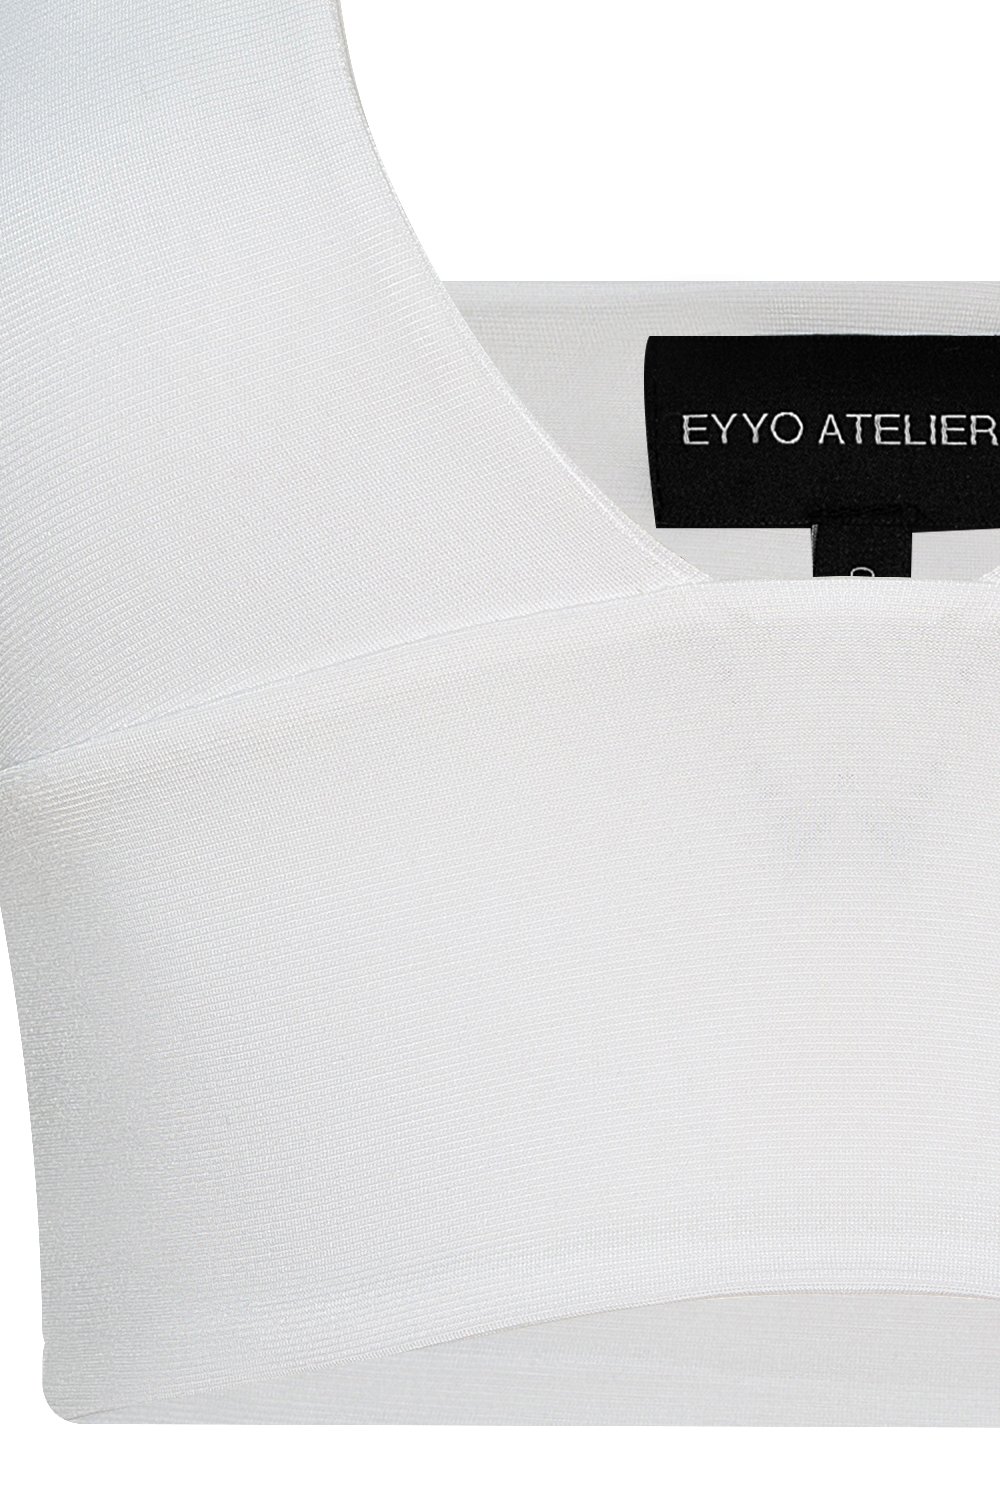 Kie Beyaz Bluz EY710 - 8